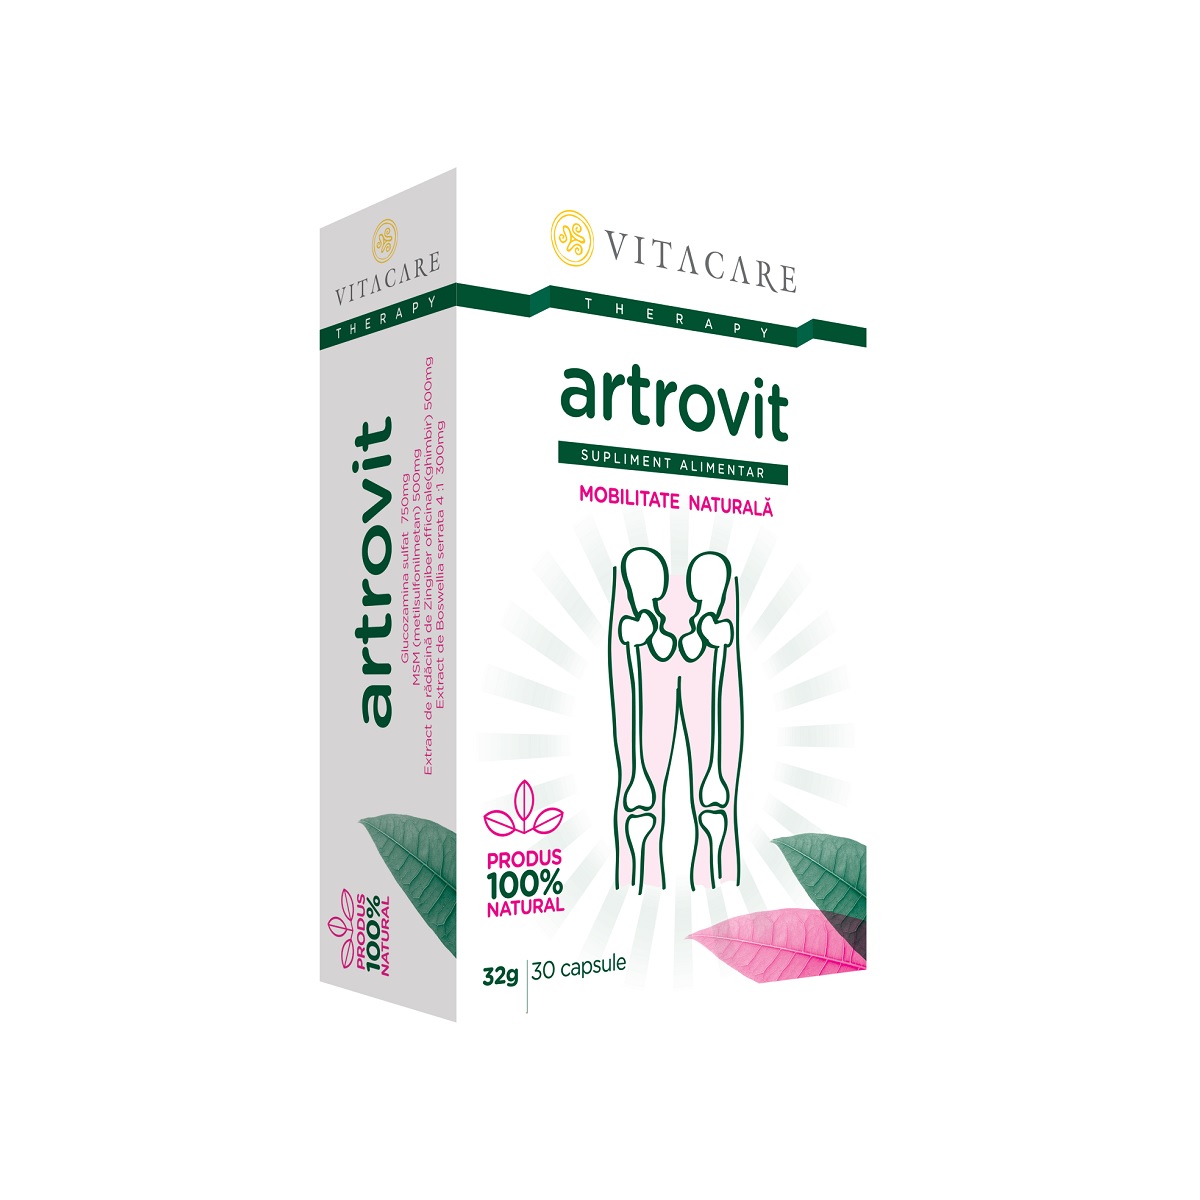 Astrovit, 30 capsule, Vitacare